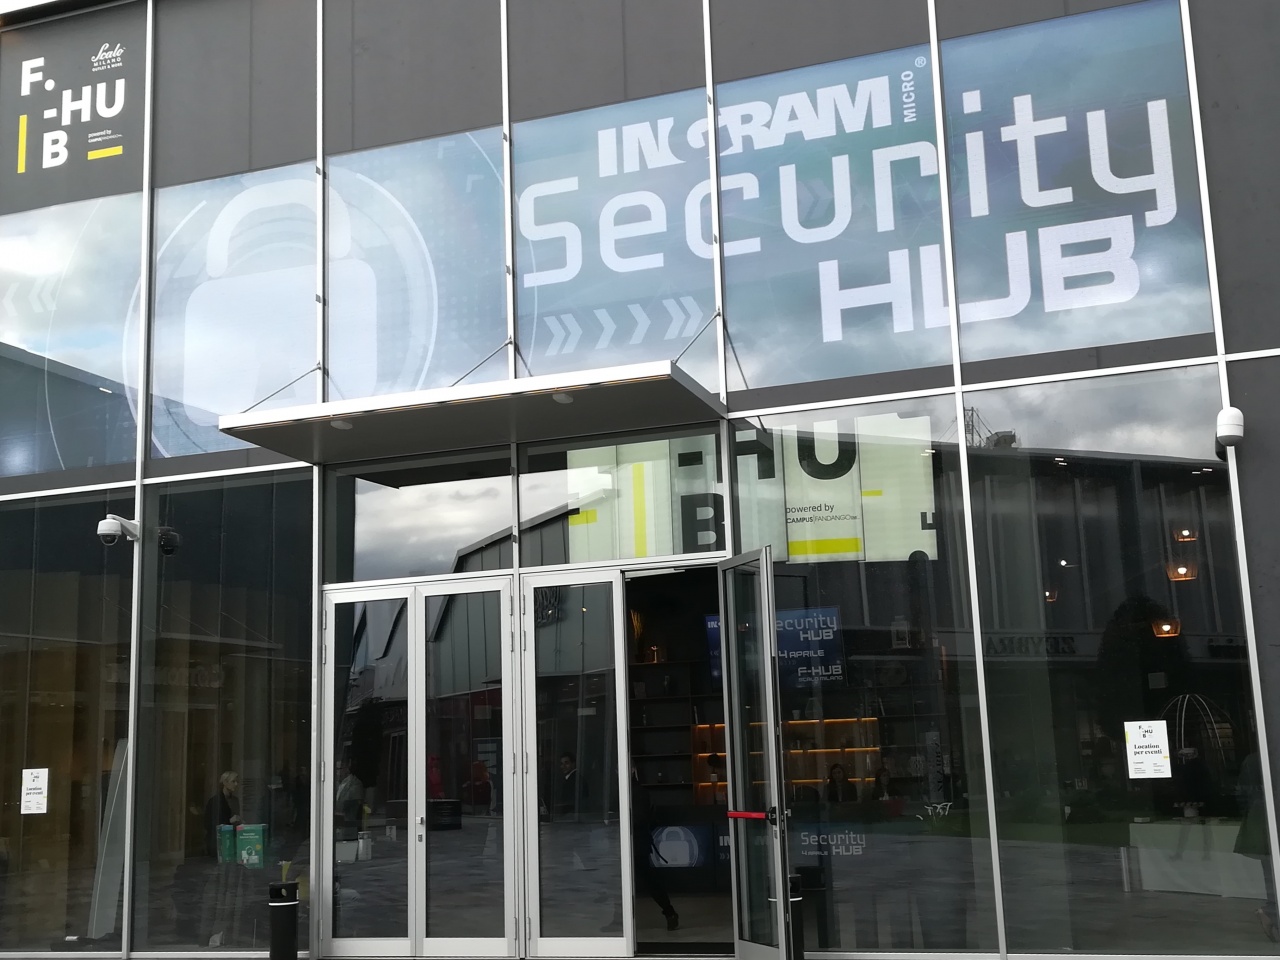 ingram security hub 2